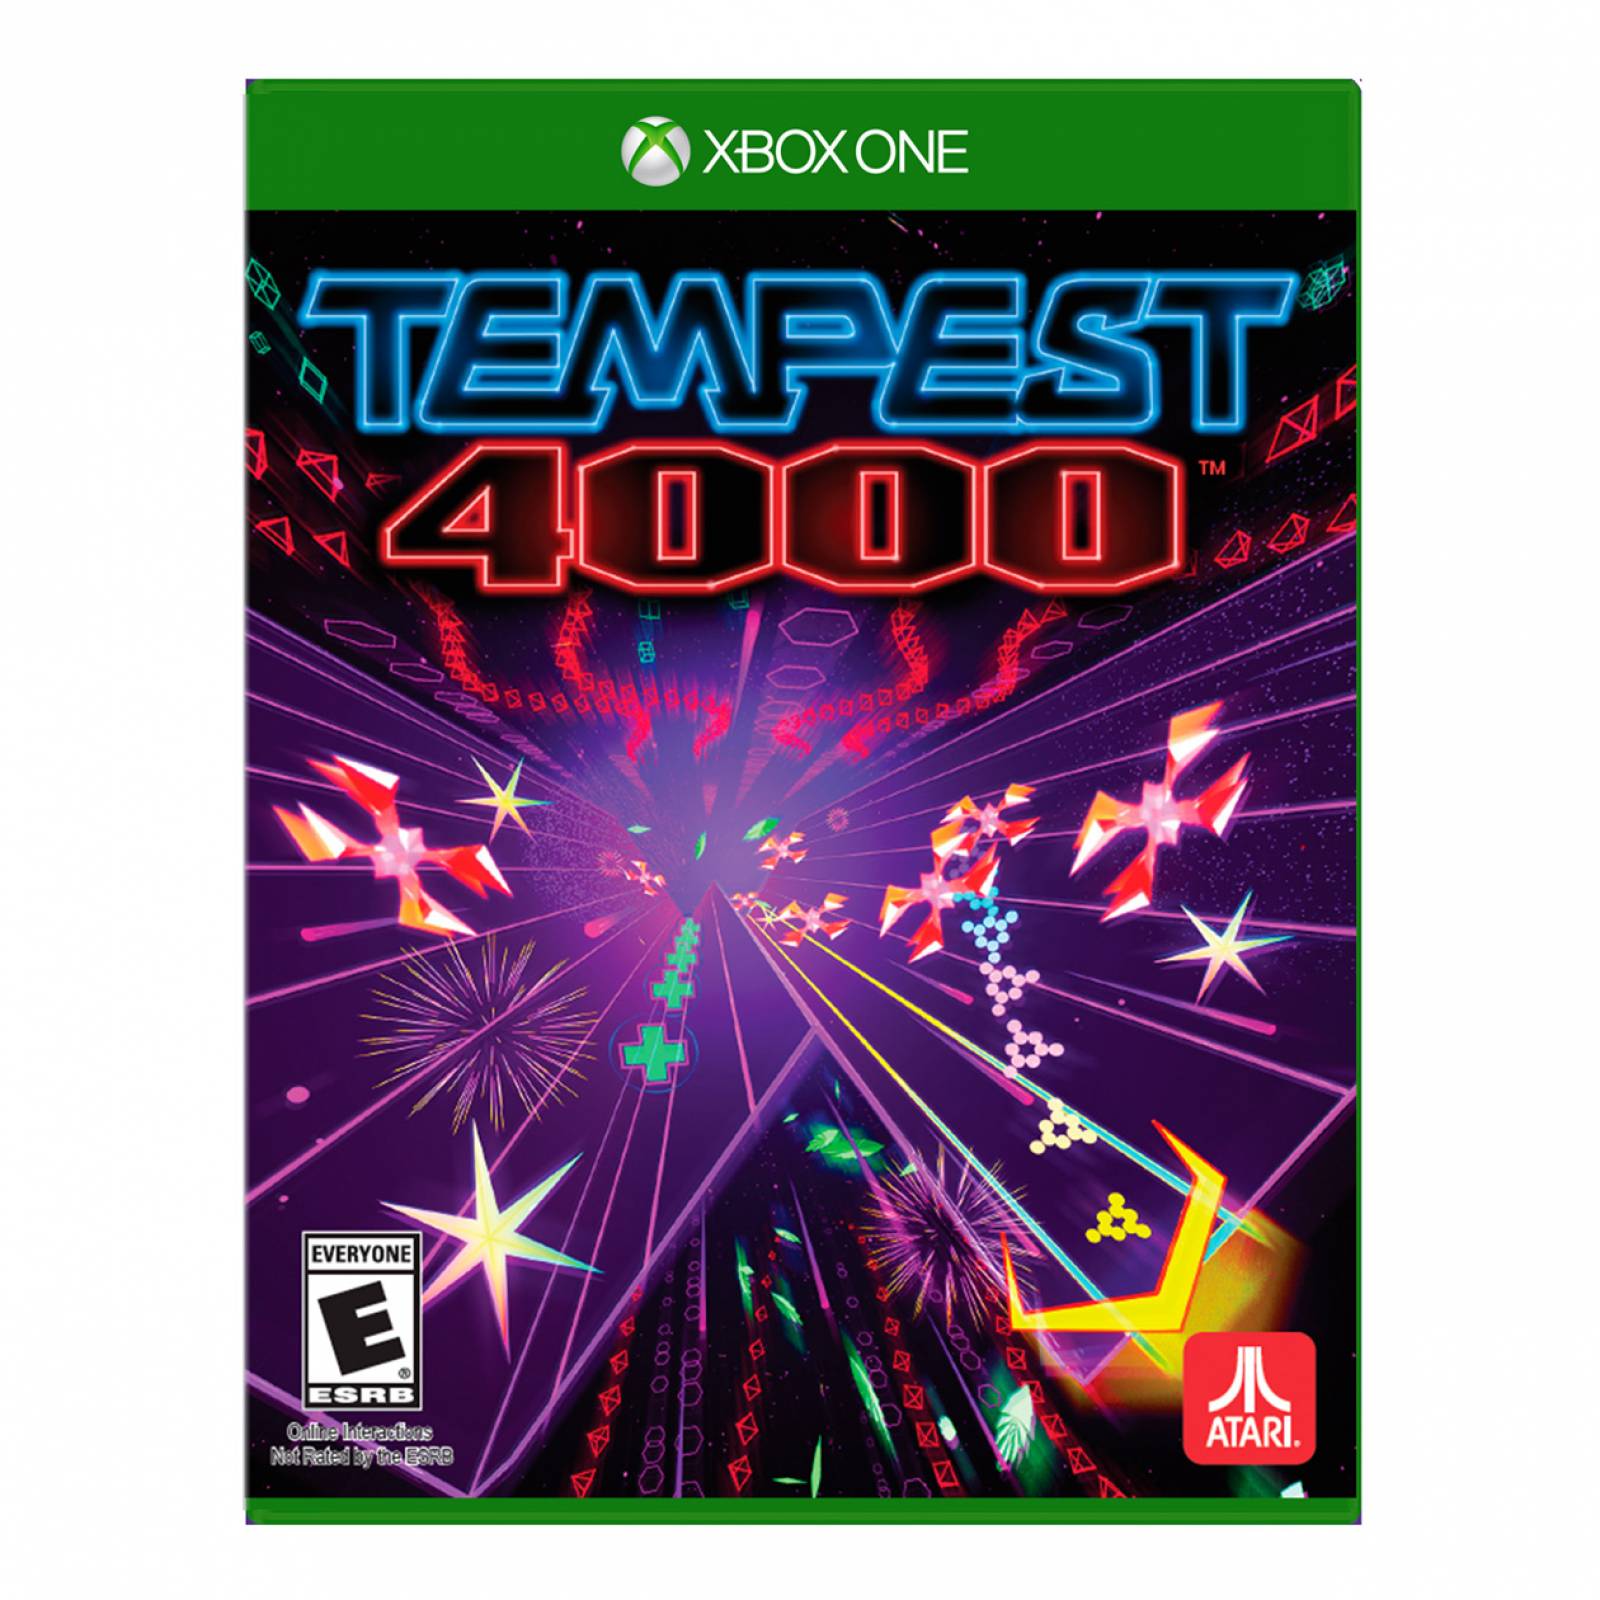 Tempest 4000 Xbox one